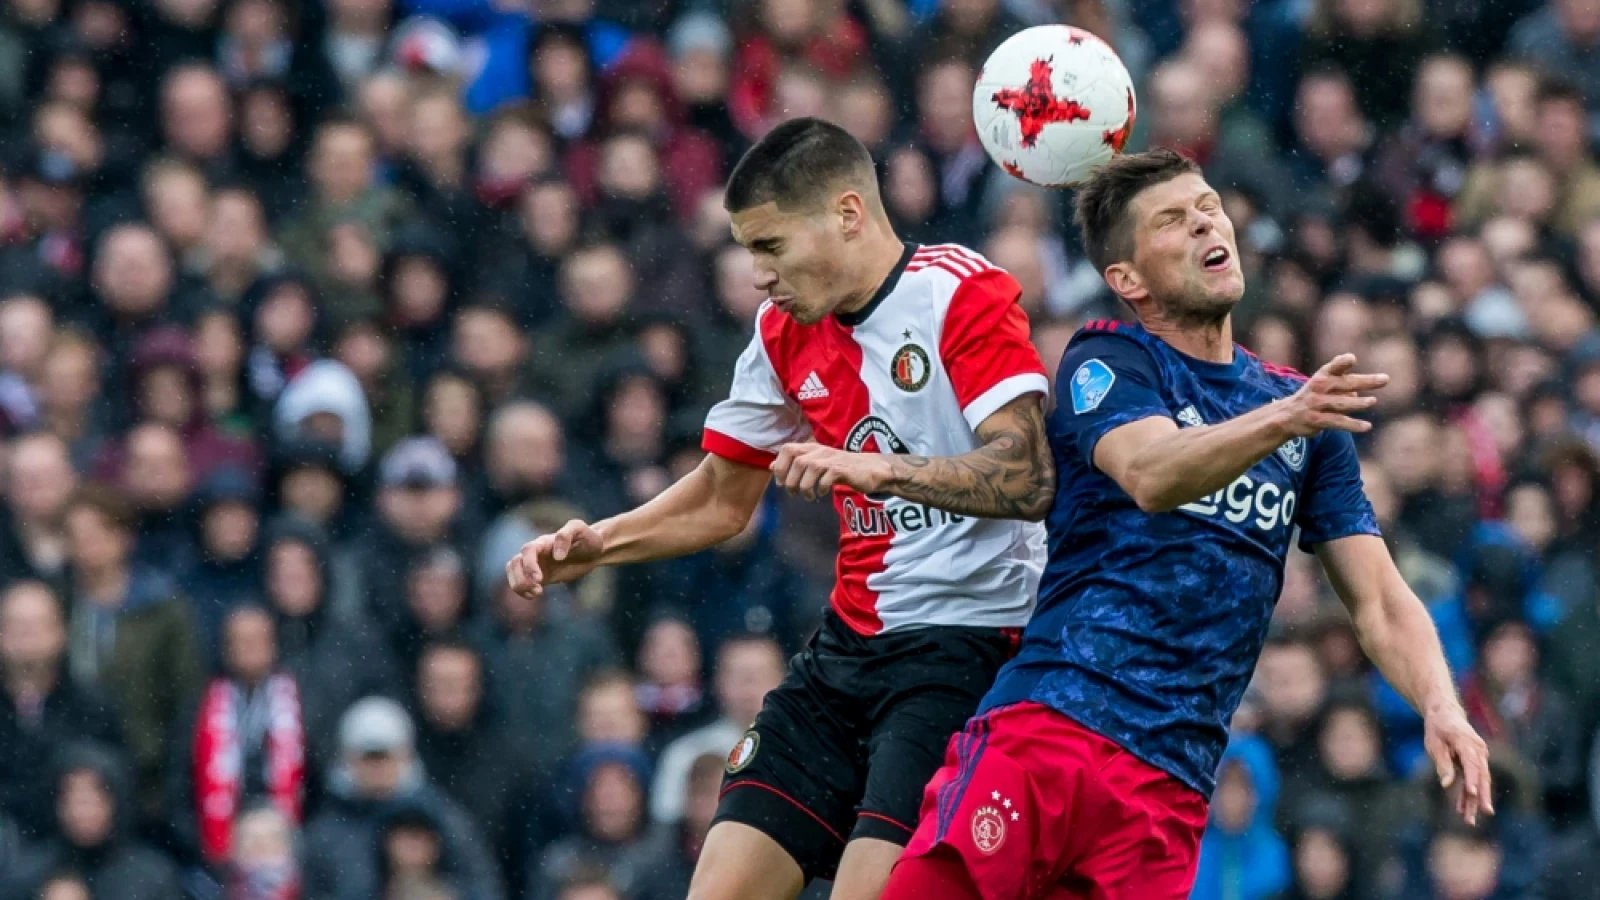 LIVE | Feyenoord - Ajax 1-4 | Einde wedstrijd